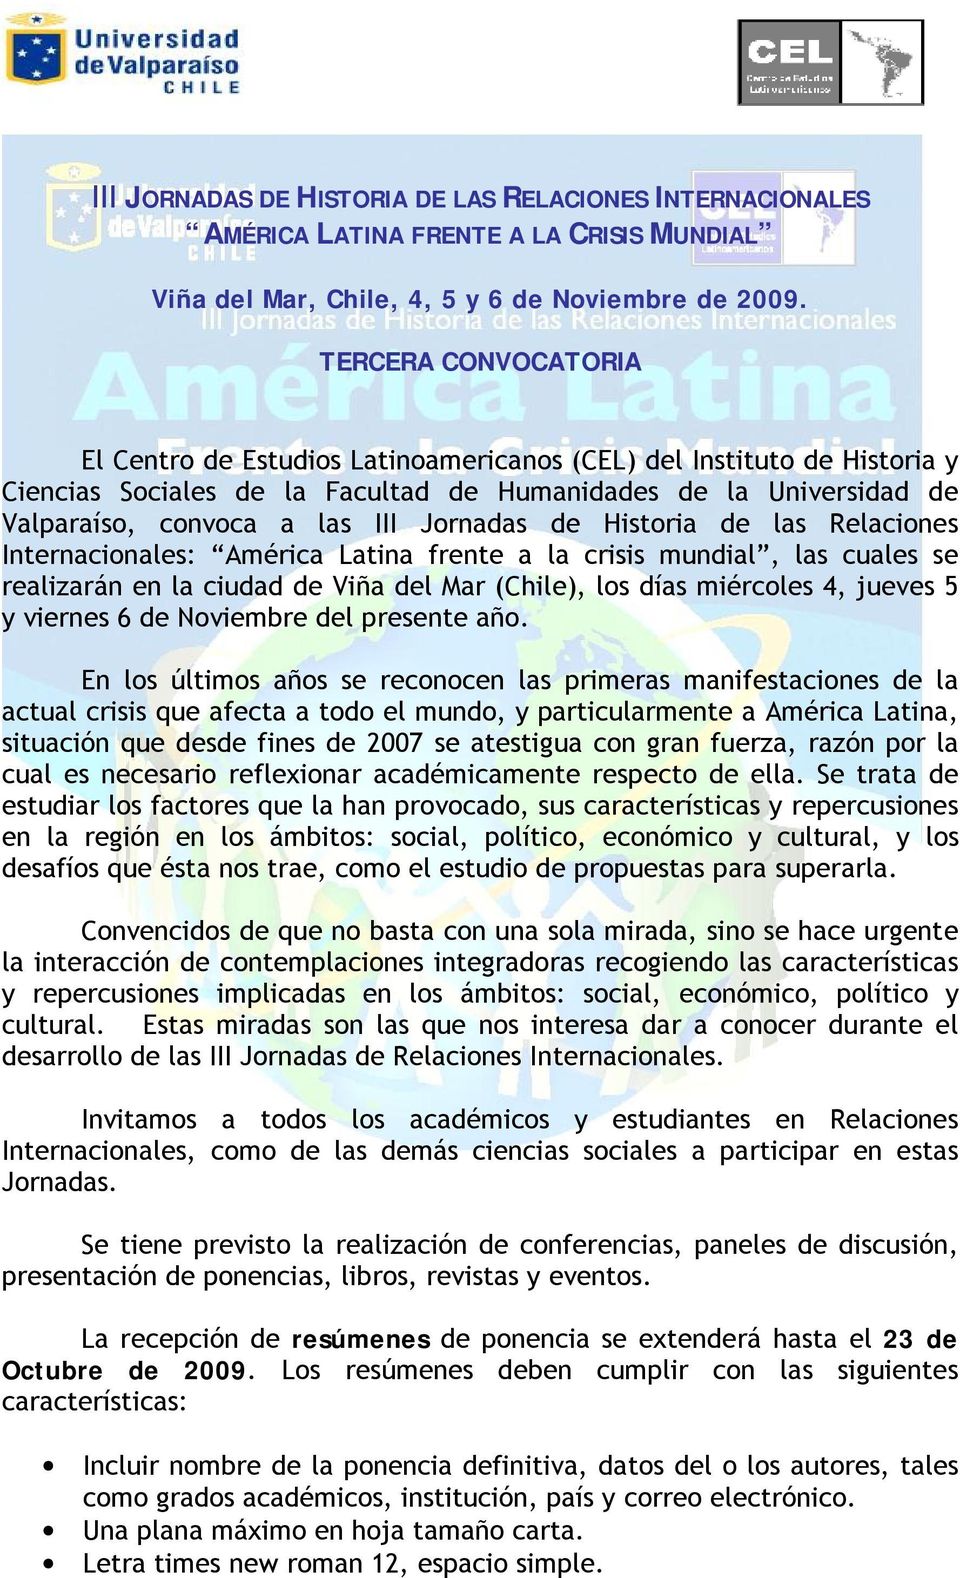 Jornadas de Historia de las Relaciones Internacionales: América Latina frente a la crisis mundial, las cuales se realizarán en la ciudad de Viña del Mar (Chile), los días miércoles 4, jueves 5 y